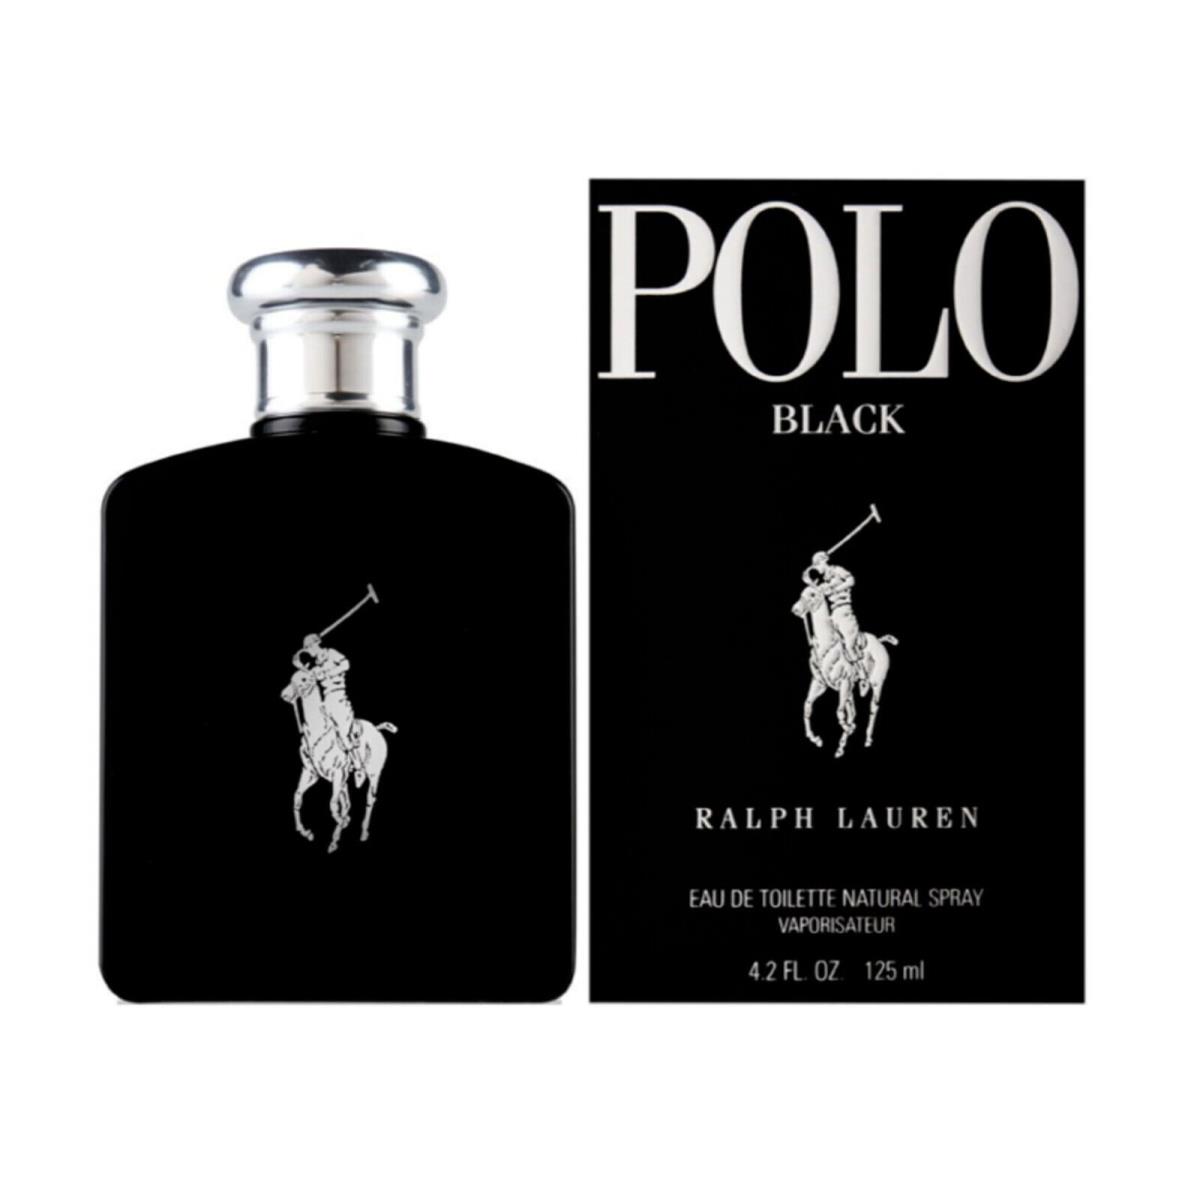 Polo Black by Ralph Lauren 4.2 oz / 125 ml Edt Spray For Men